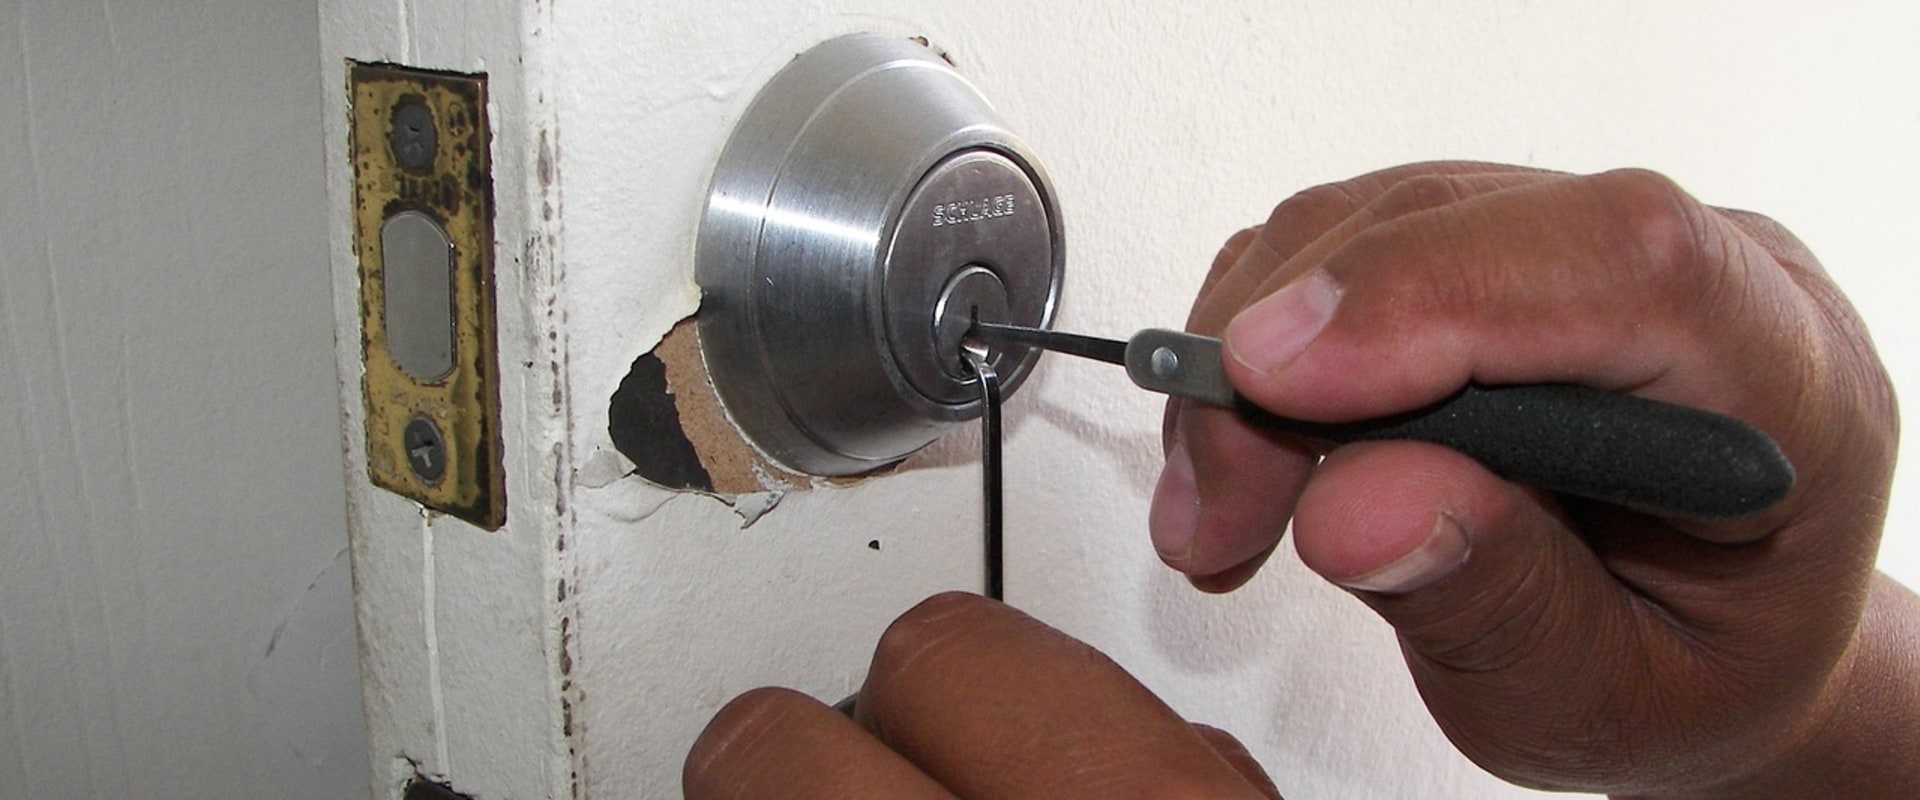 How does locksmith open a locked door?